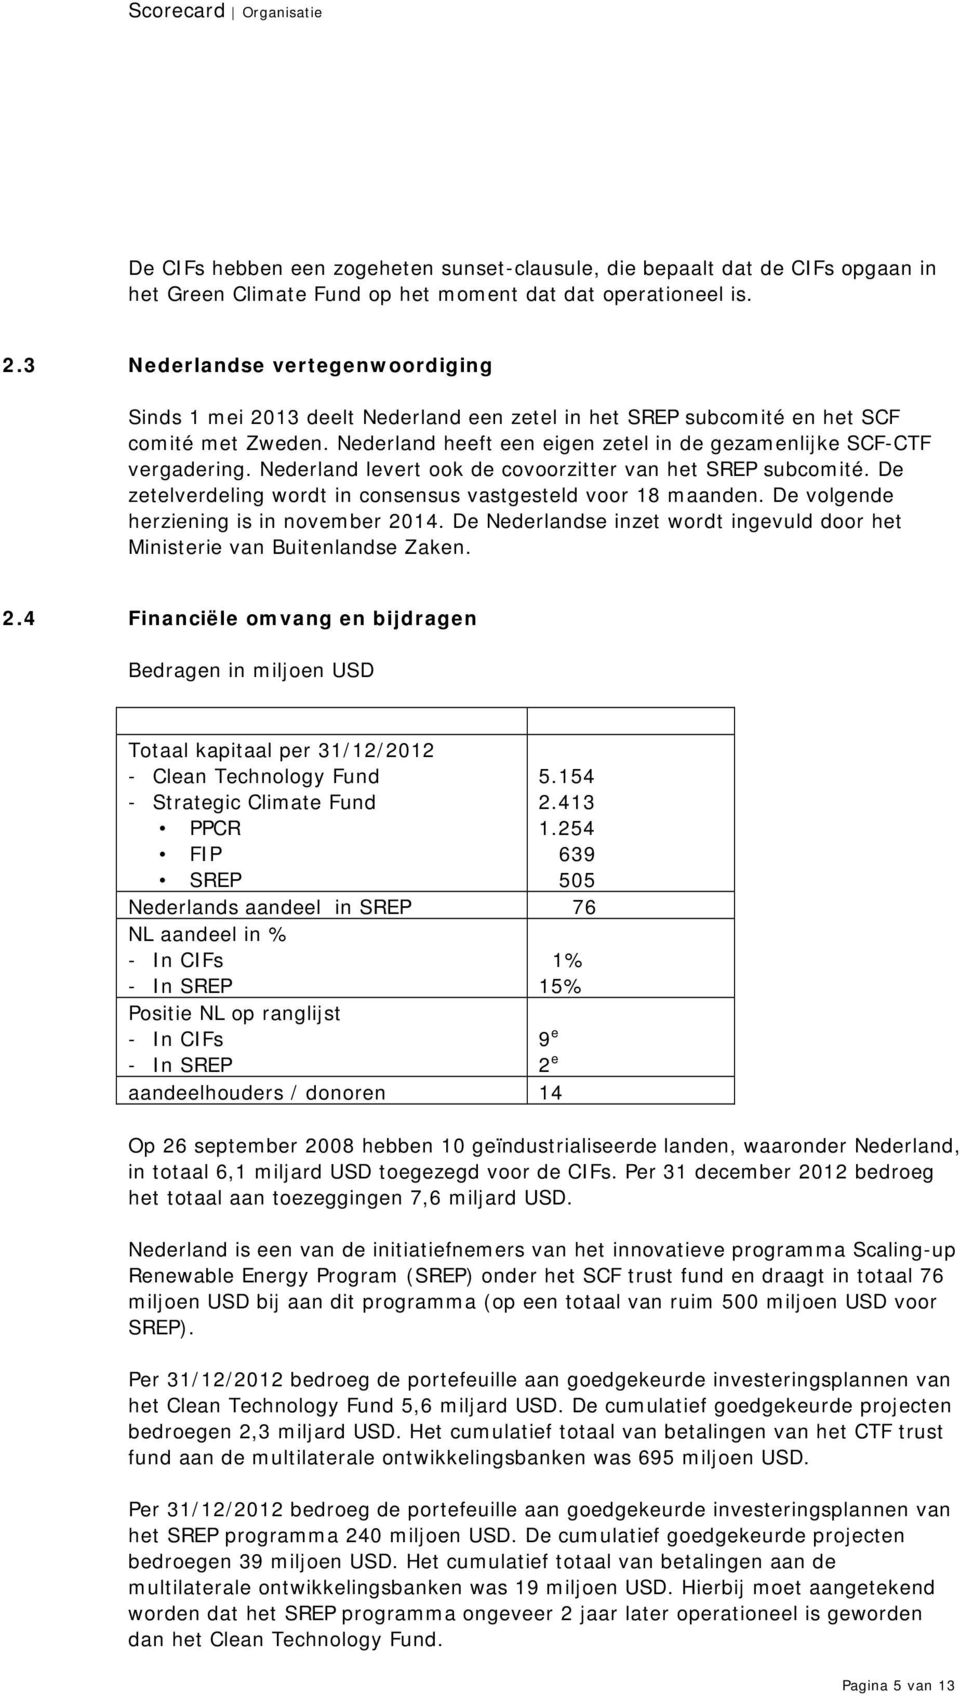 Nederland levert ook de covoorzitter van het SREP subcomité. De zetelverdeling wordt in consensus vastgesteld voor 18 maanden. De volgende herziening is in november 2014.